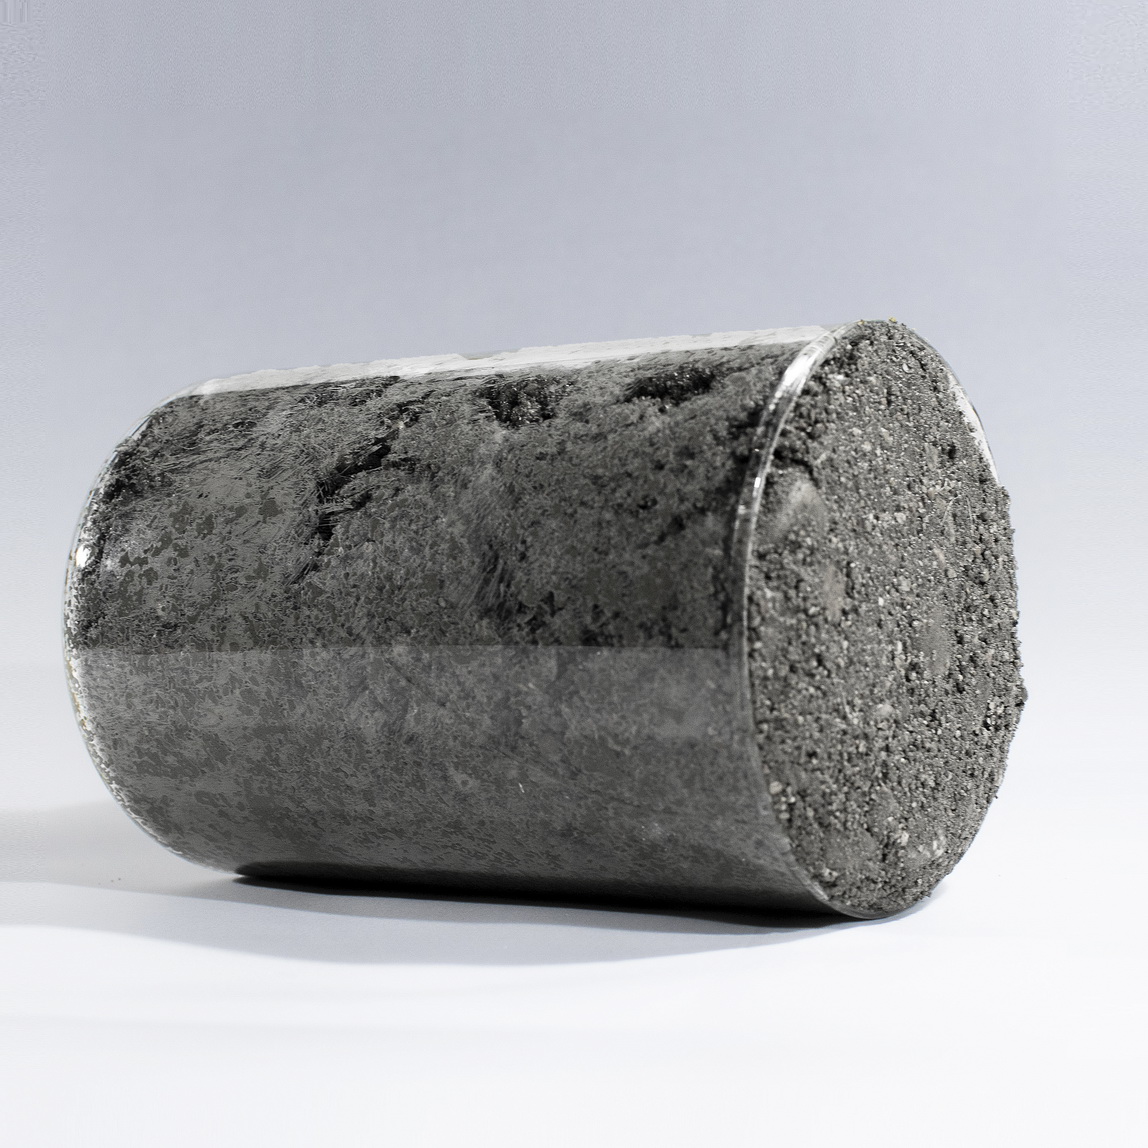 Бетон м100 гравий содержание вовлеченного воздуха в бетонной смеси должно быть